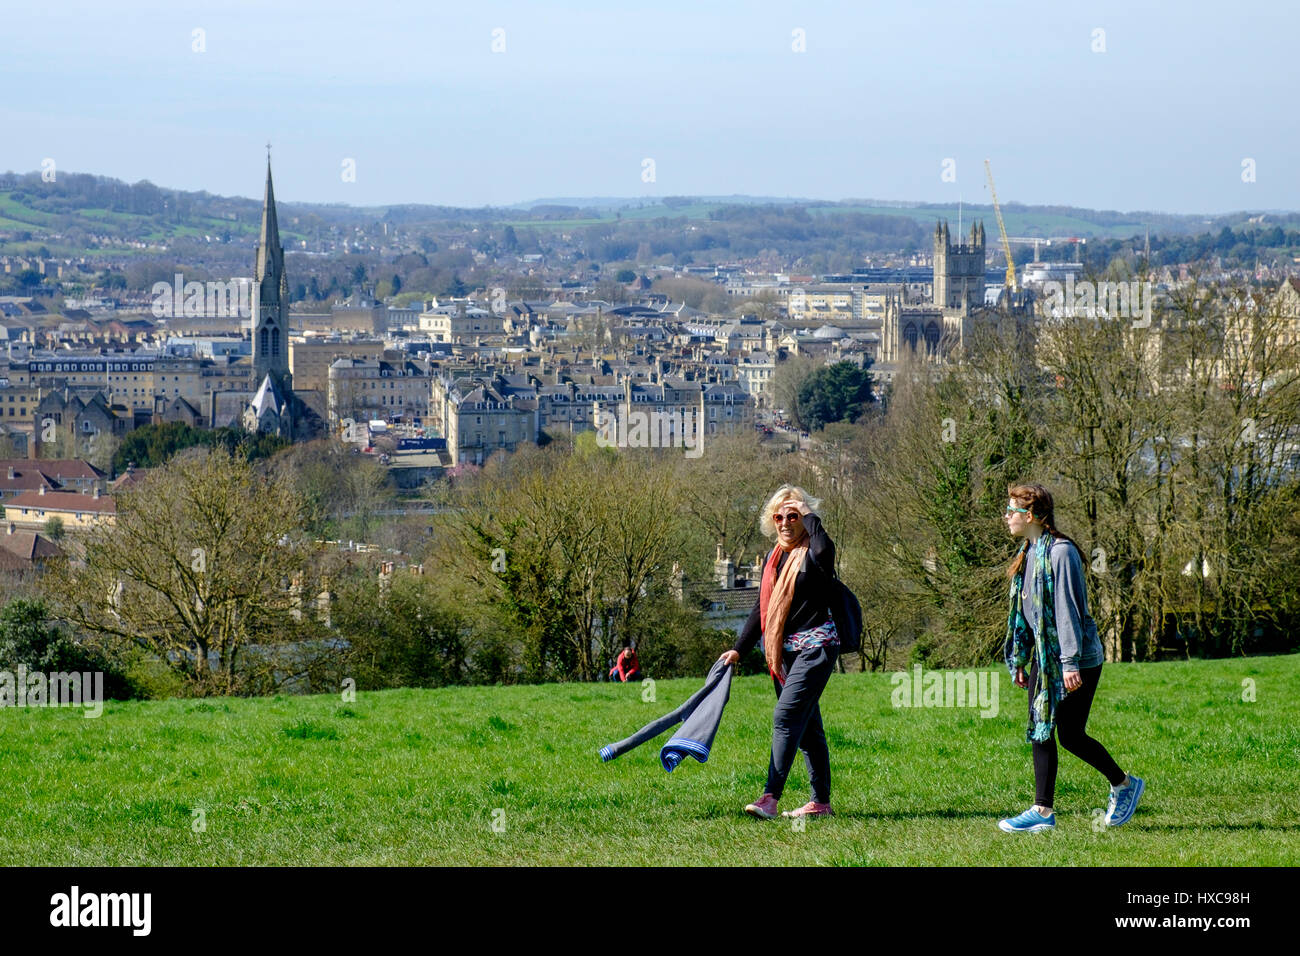 Zwei Wanderer / Spaziergänger sind abgebildet, zu Fuß auf Bathwick Hill mit Blick auf die Stadt Bath, wie sie das gute Wetter und warmen Sonnenschein nutzen Stockfoto